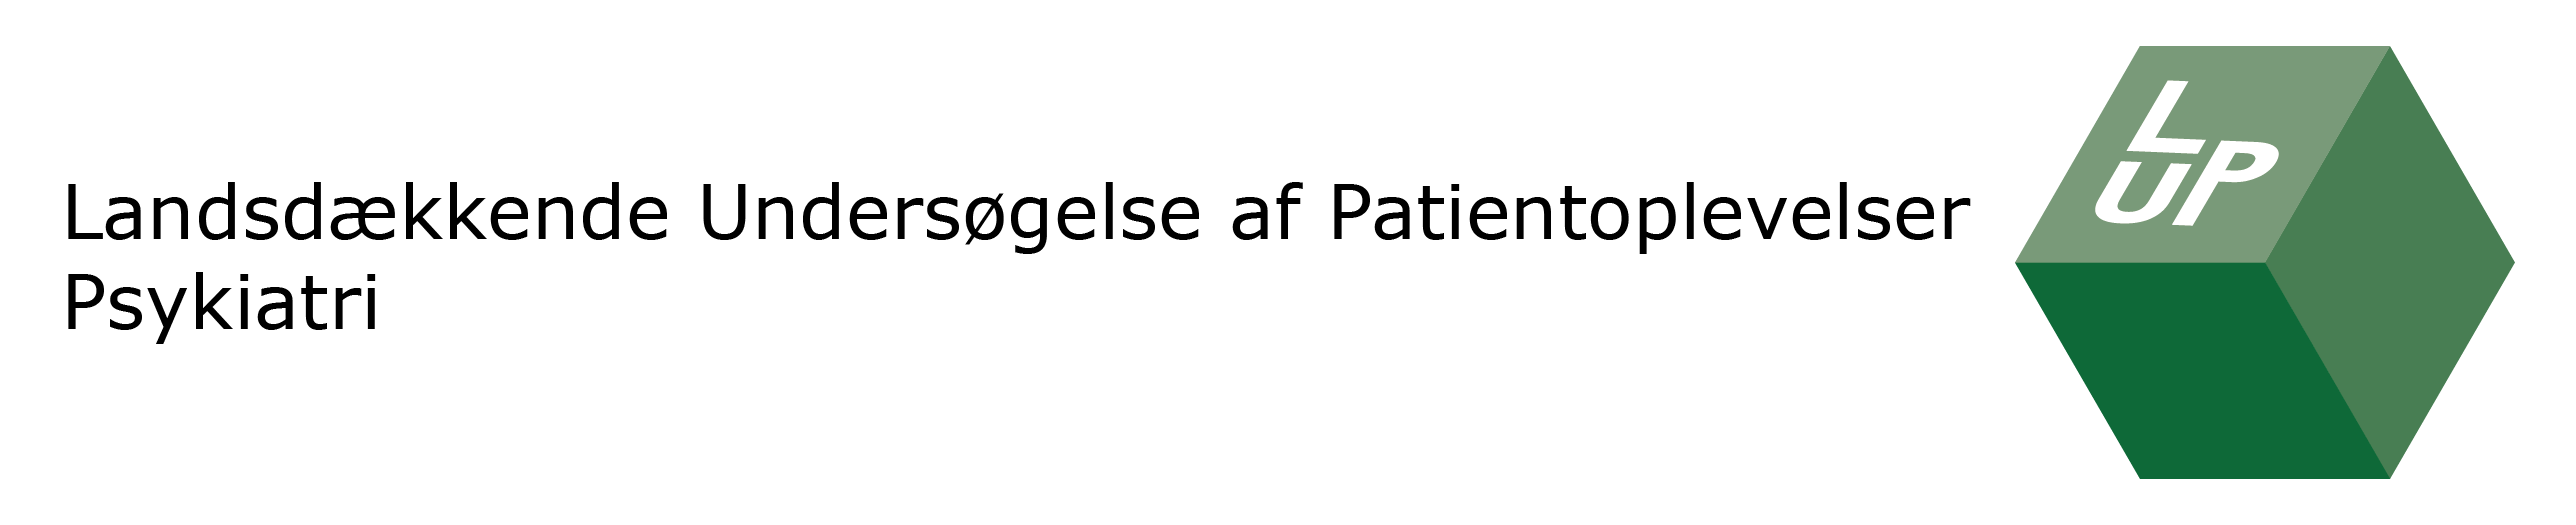 LUPs logo, der viser en grøn terning med 'LUP' på.